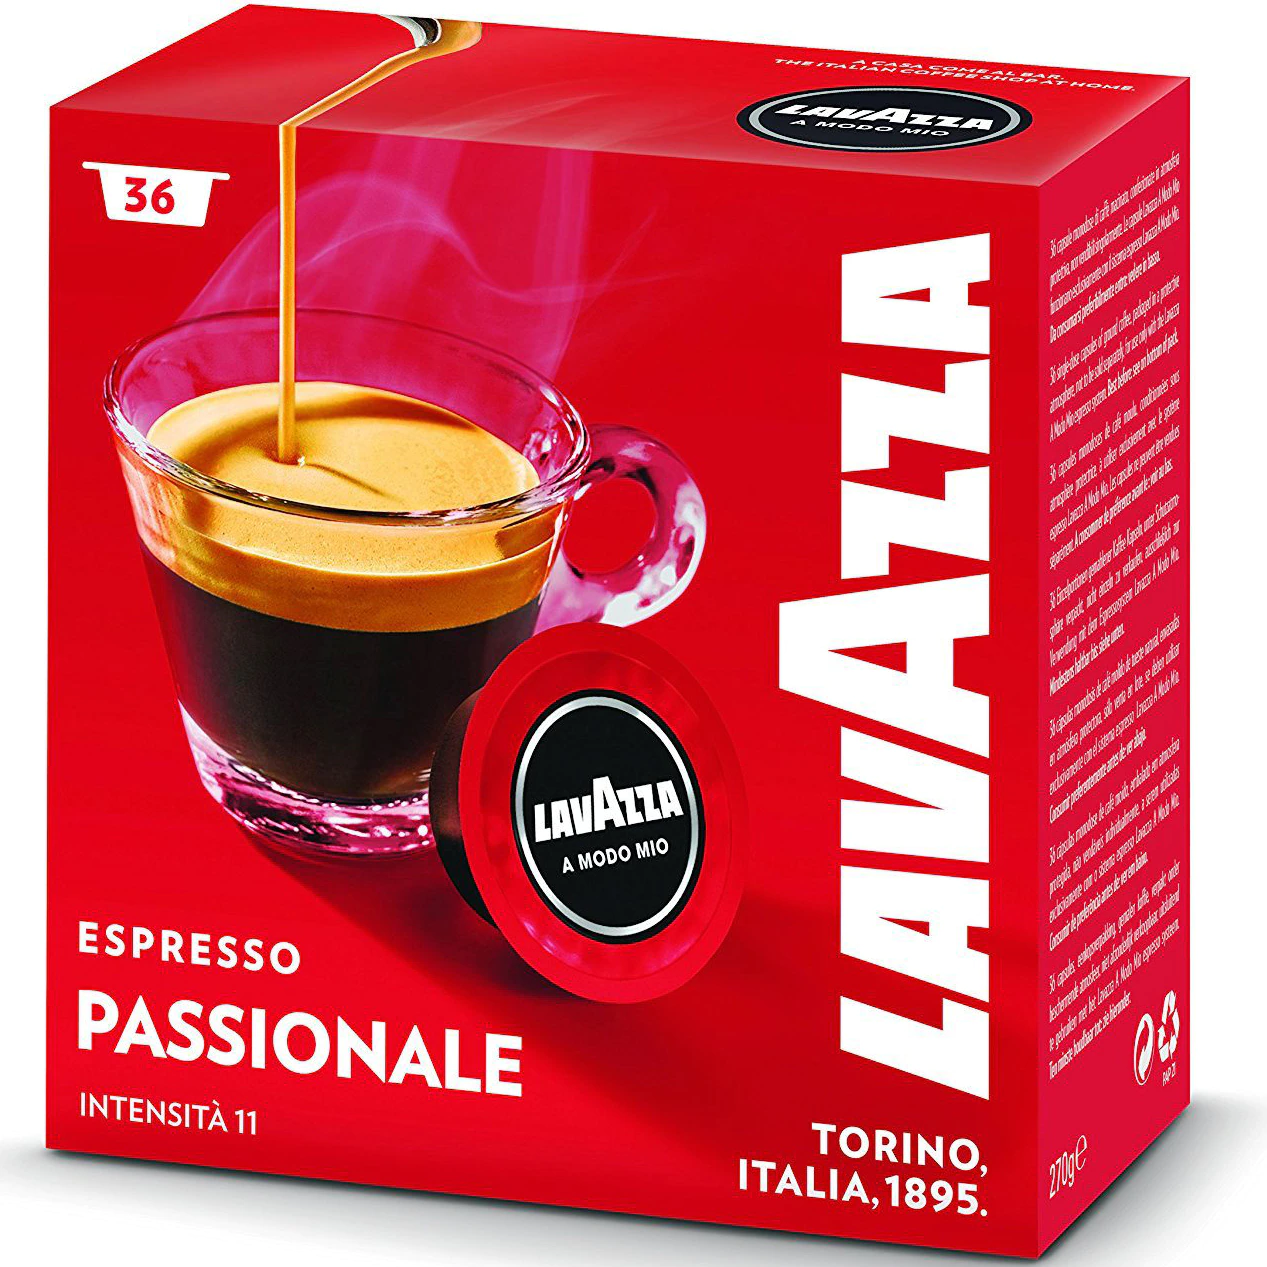 lavazza espresso passionale a modo mio 36 capsule kfea 293763d118fda6cc8 Capsule Lavazza A Modo Mio Amazon